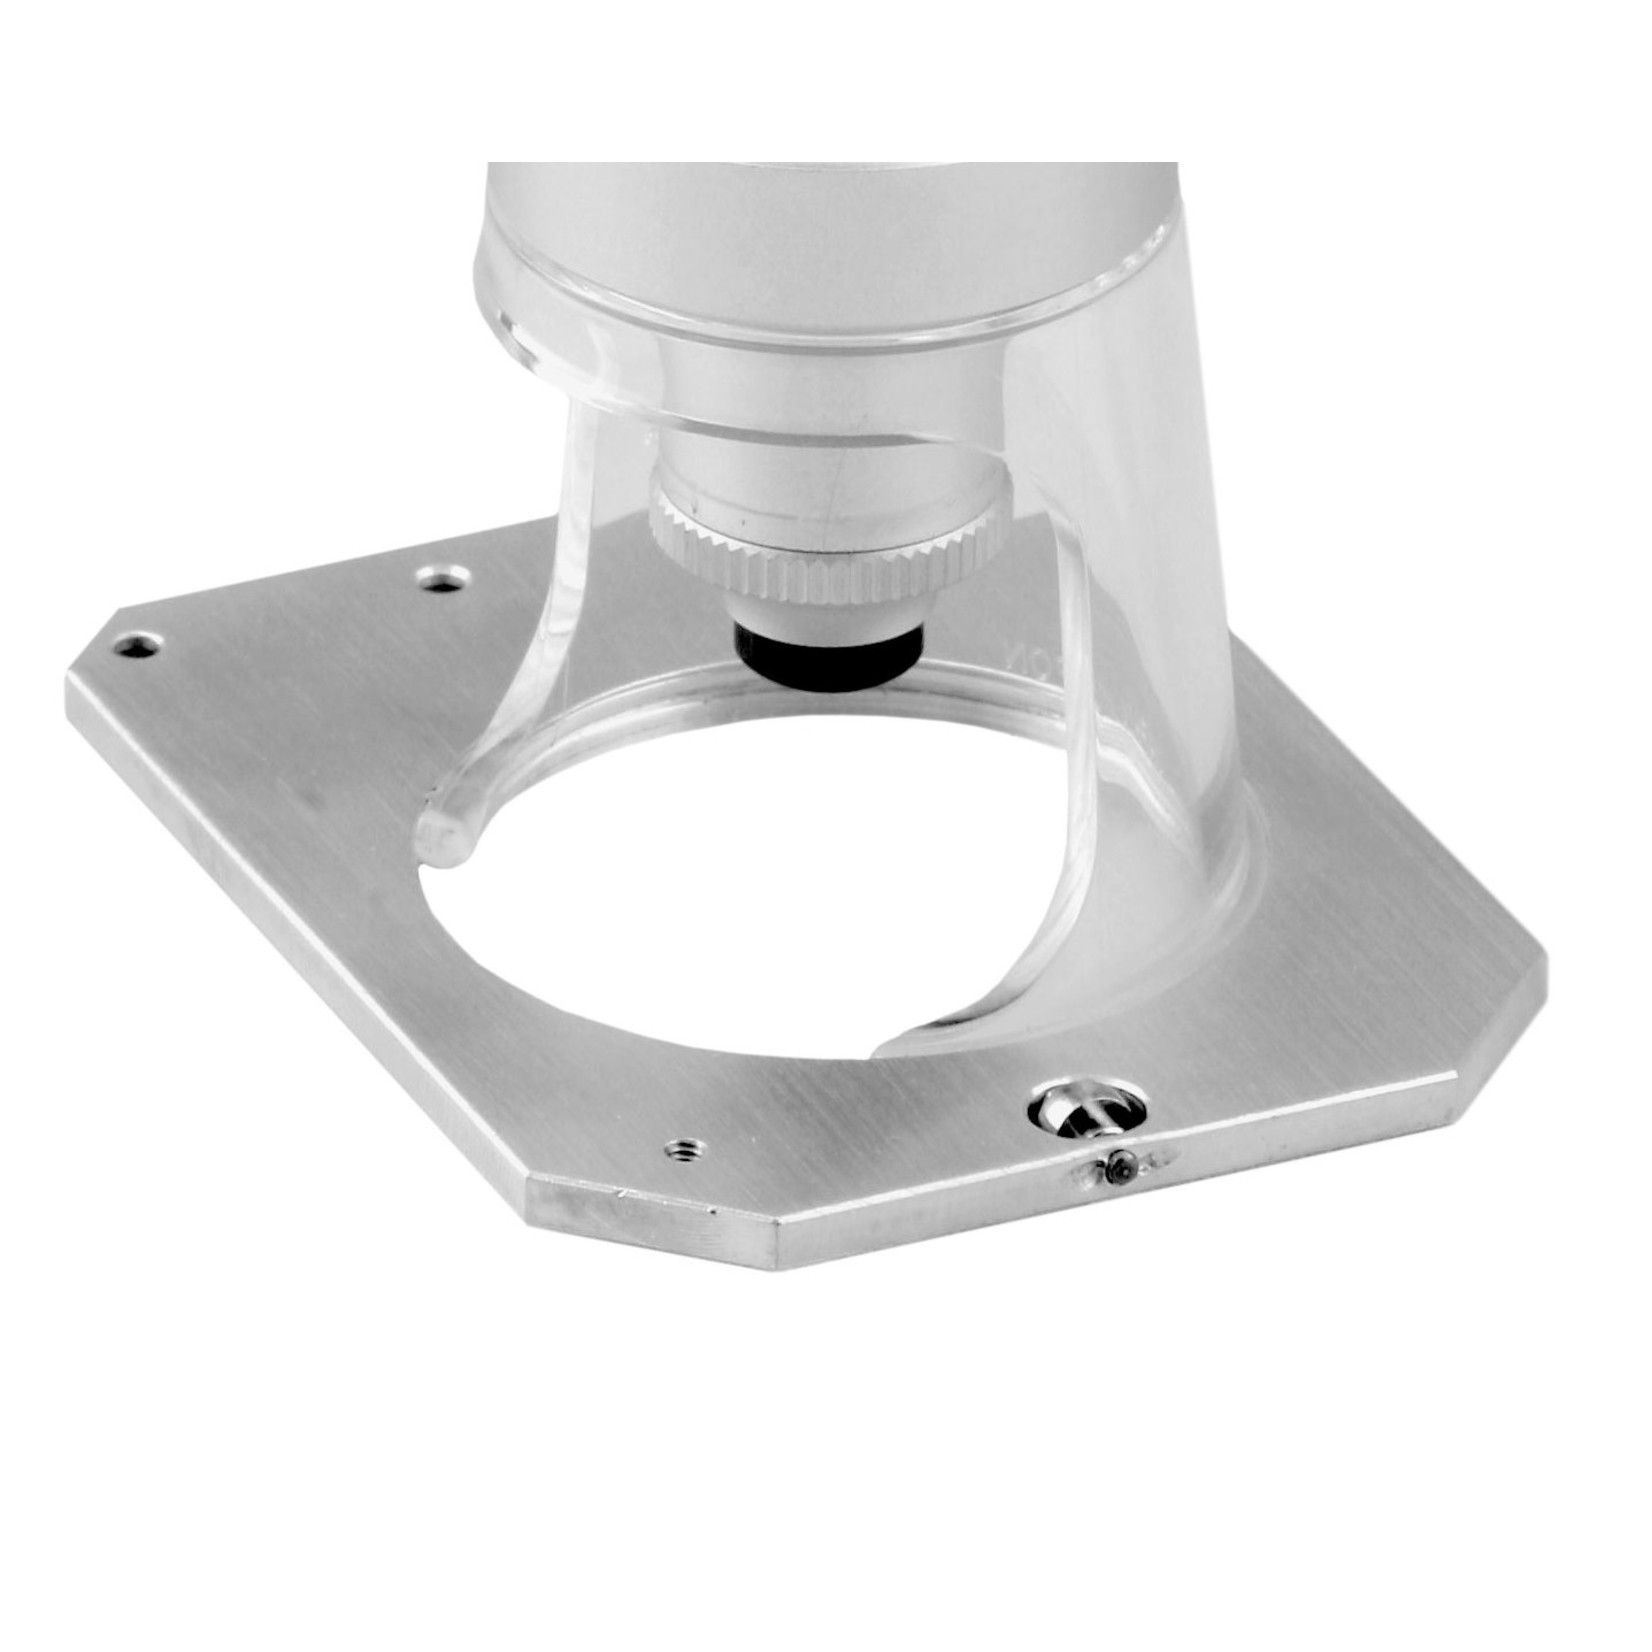 Placa base de aluminio para el montaje de microscopios ES-2008